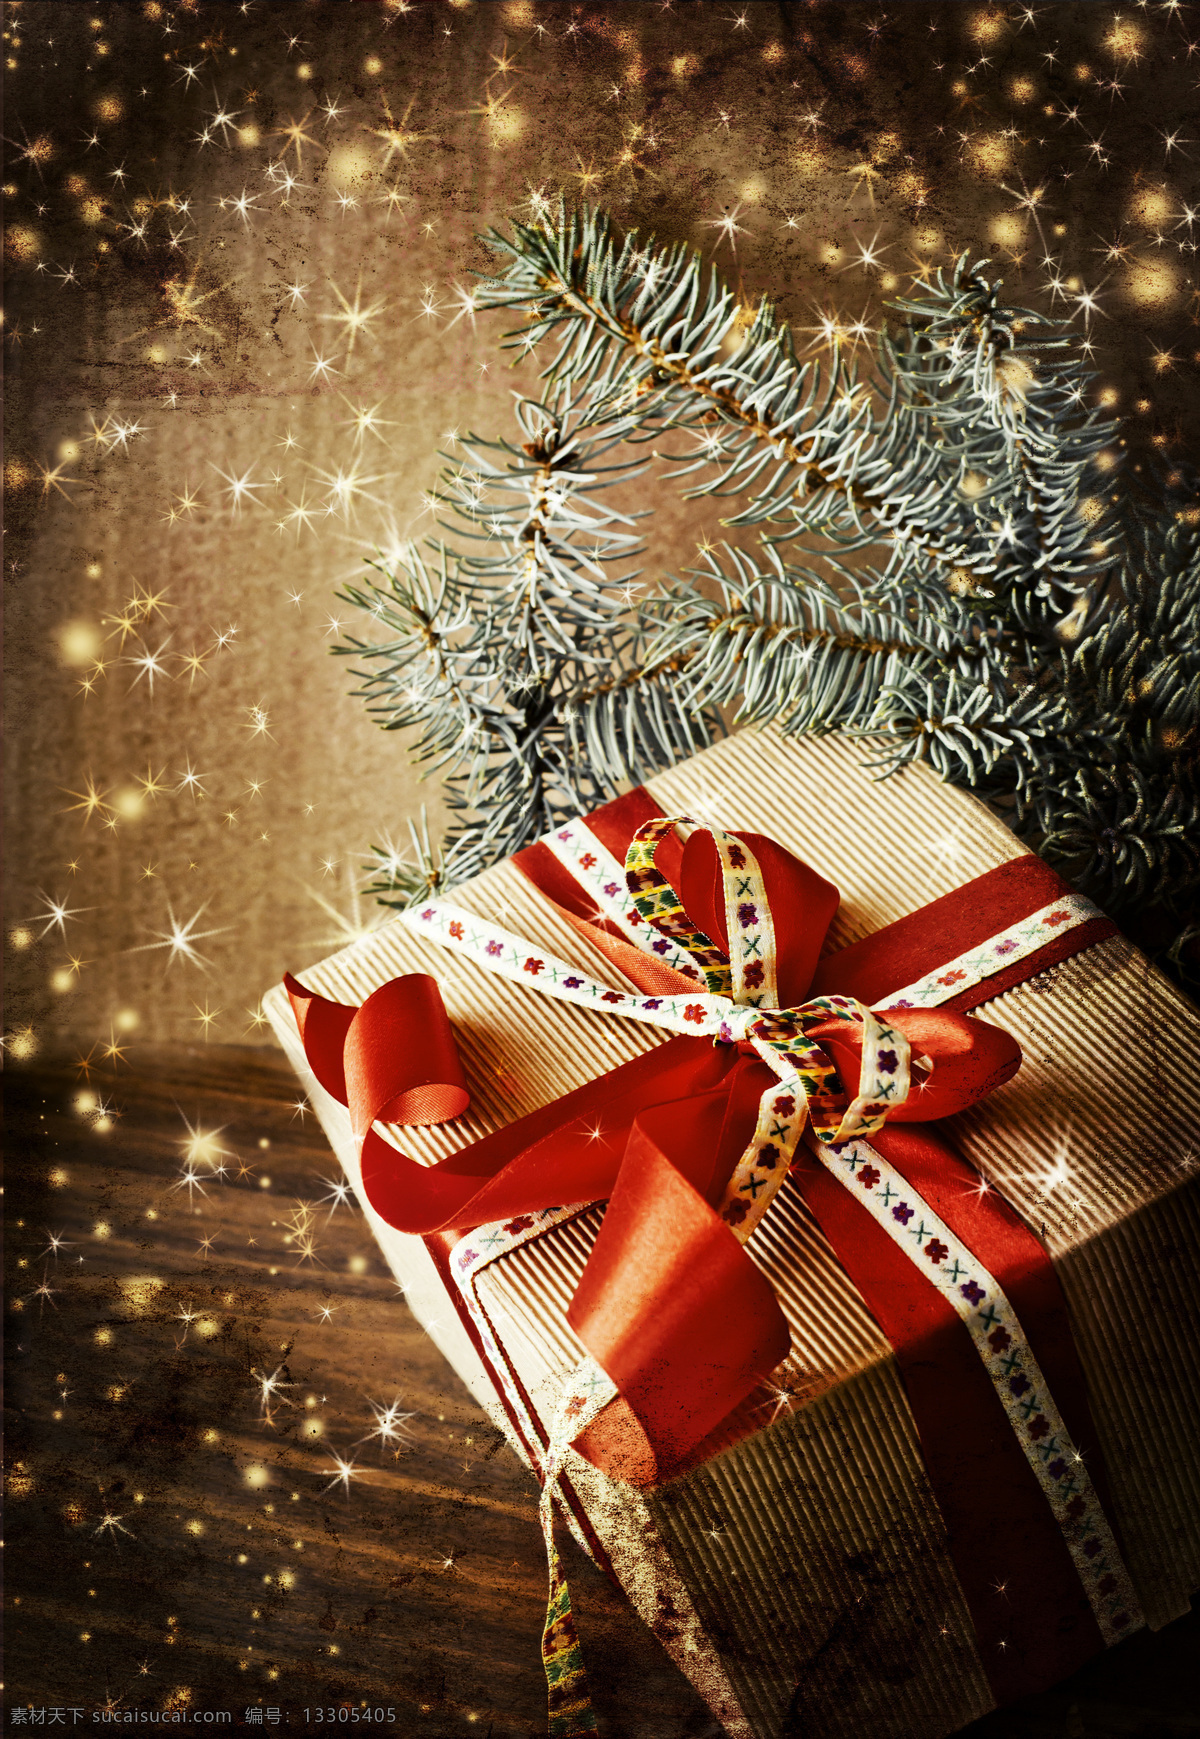 圣诞节礼物盒 圣诞节 礼物盒 星光 树枝 节日庆典 生活百科 黑色